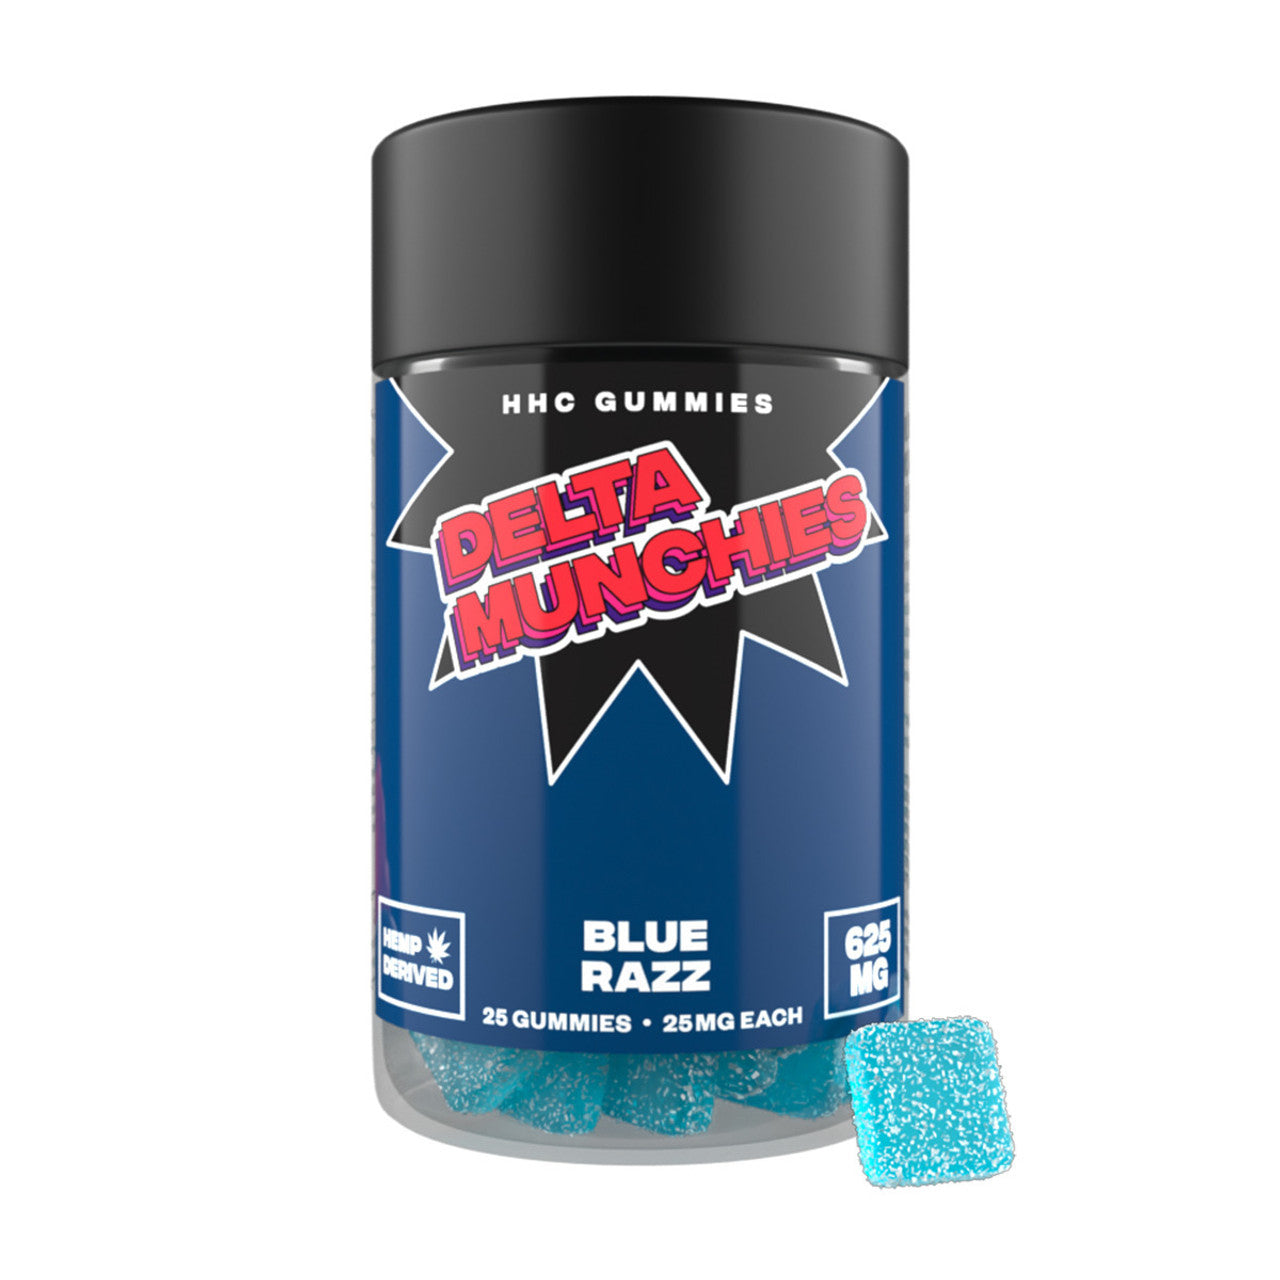 HHC Delta Munchies Gummies - Blue razz